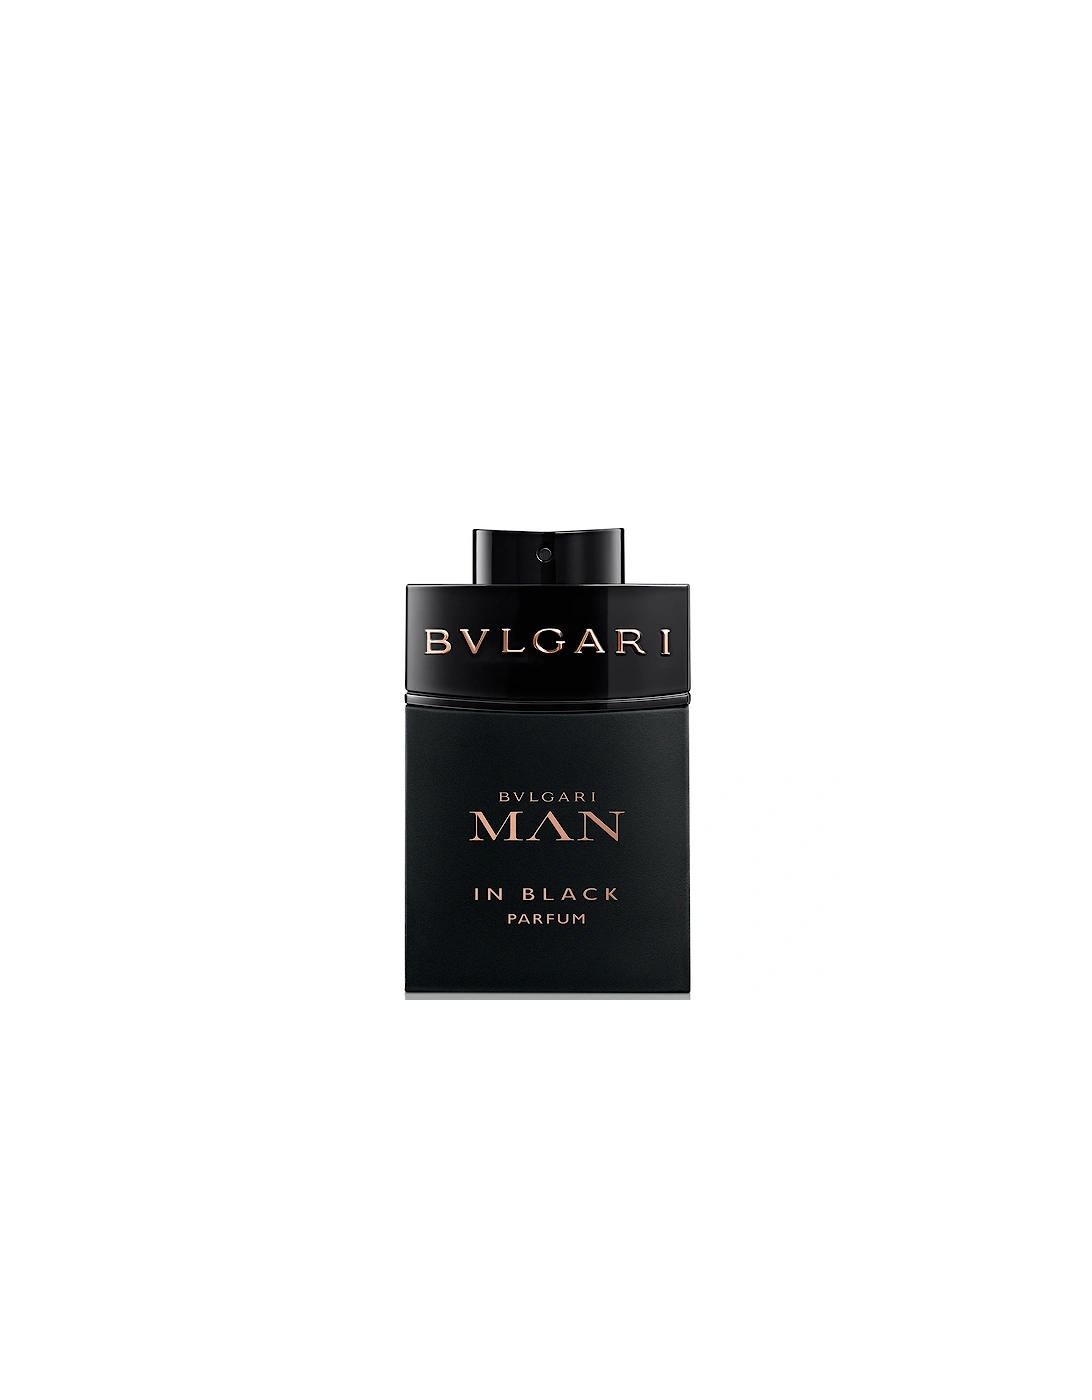 Man in Black Parfum 60ml, 2 of 1